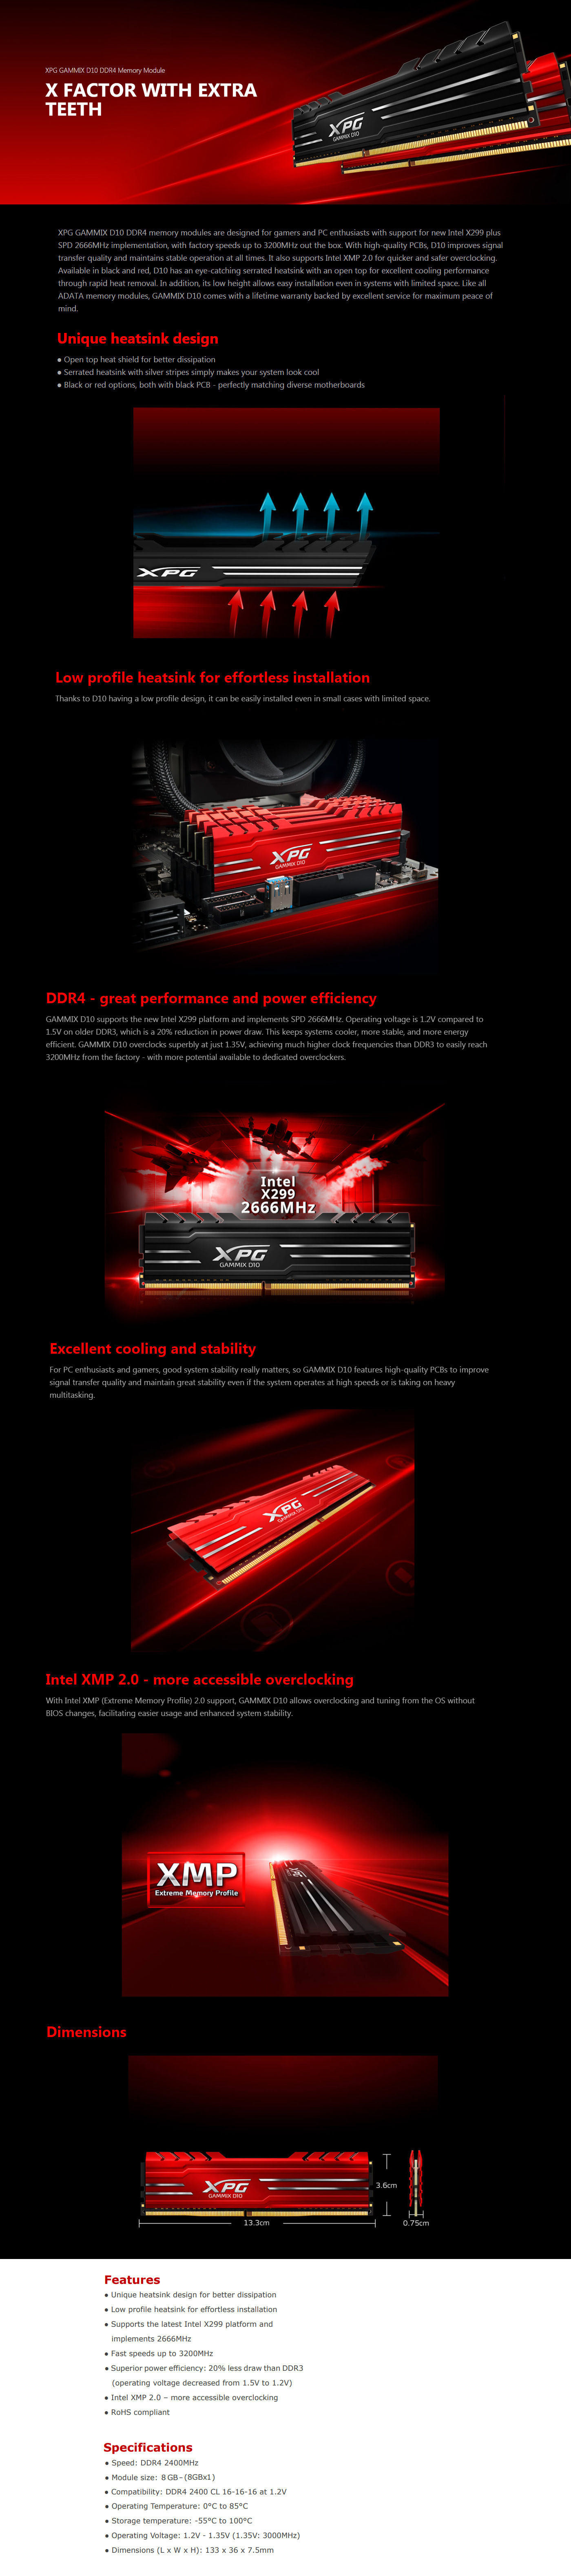  Buy Online Adata XPG GAMMIX D10 8GB (1 x 8GB) 2400Mhz DDR4 Memory - Red (AX4U240038G16-SRG)